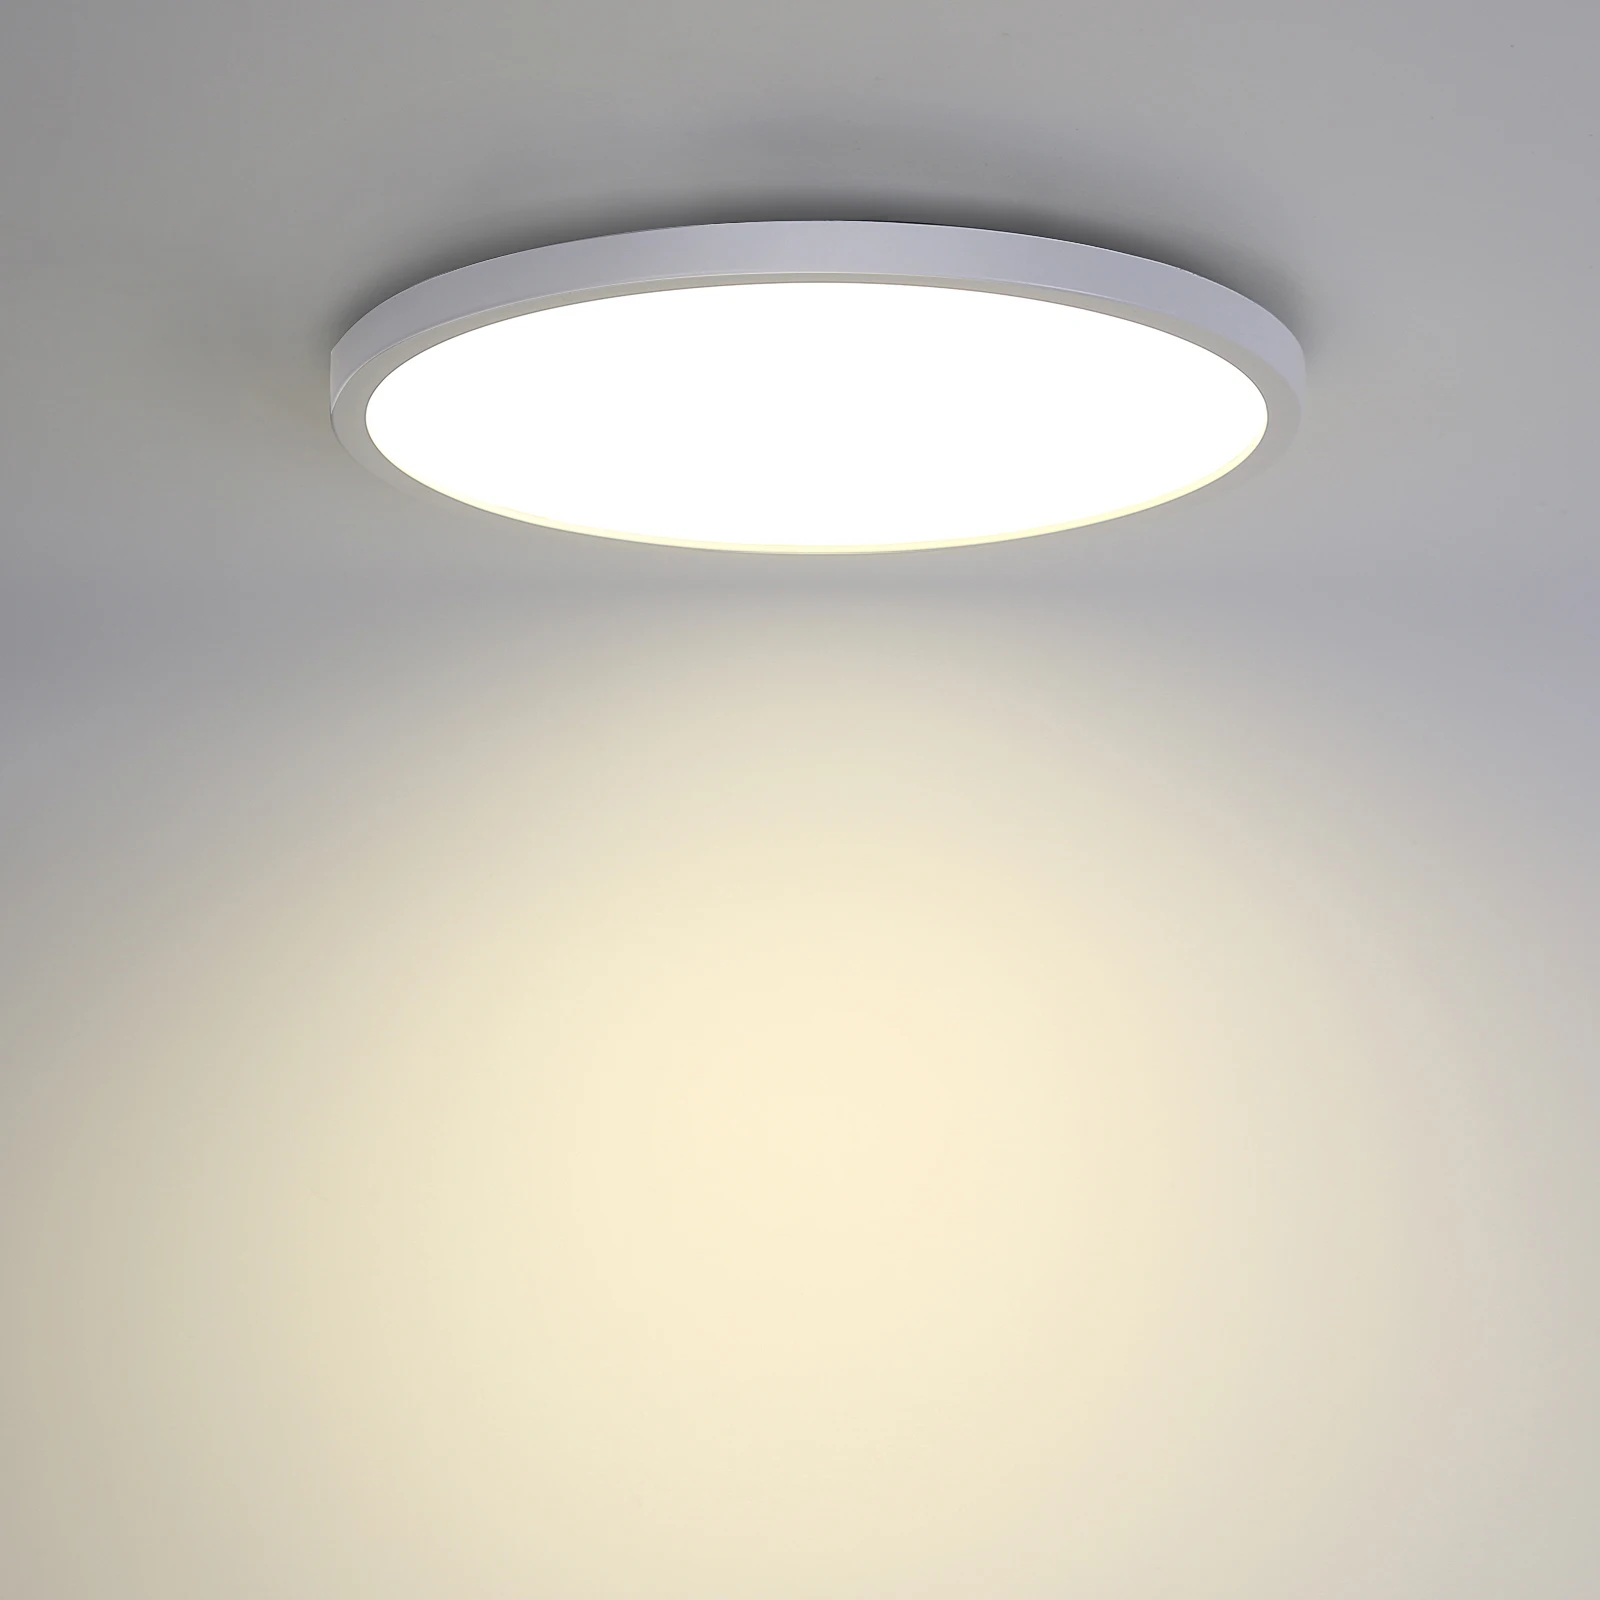 

Светодиодная круглая потолочная лампа, креативный атмосферный декоративный светильник для ресторана, кафе, отеля, освещение для помещений